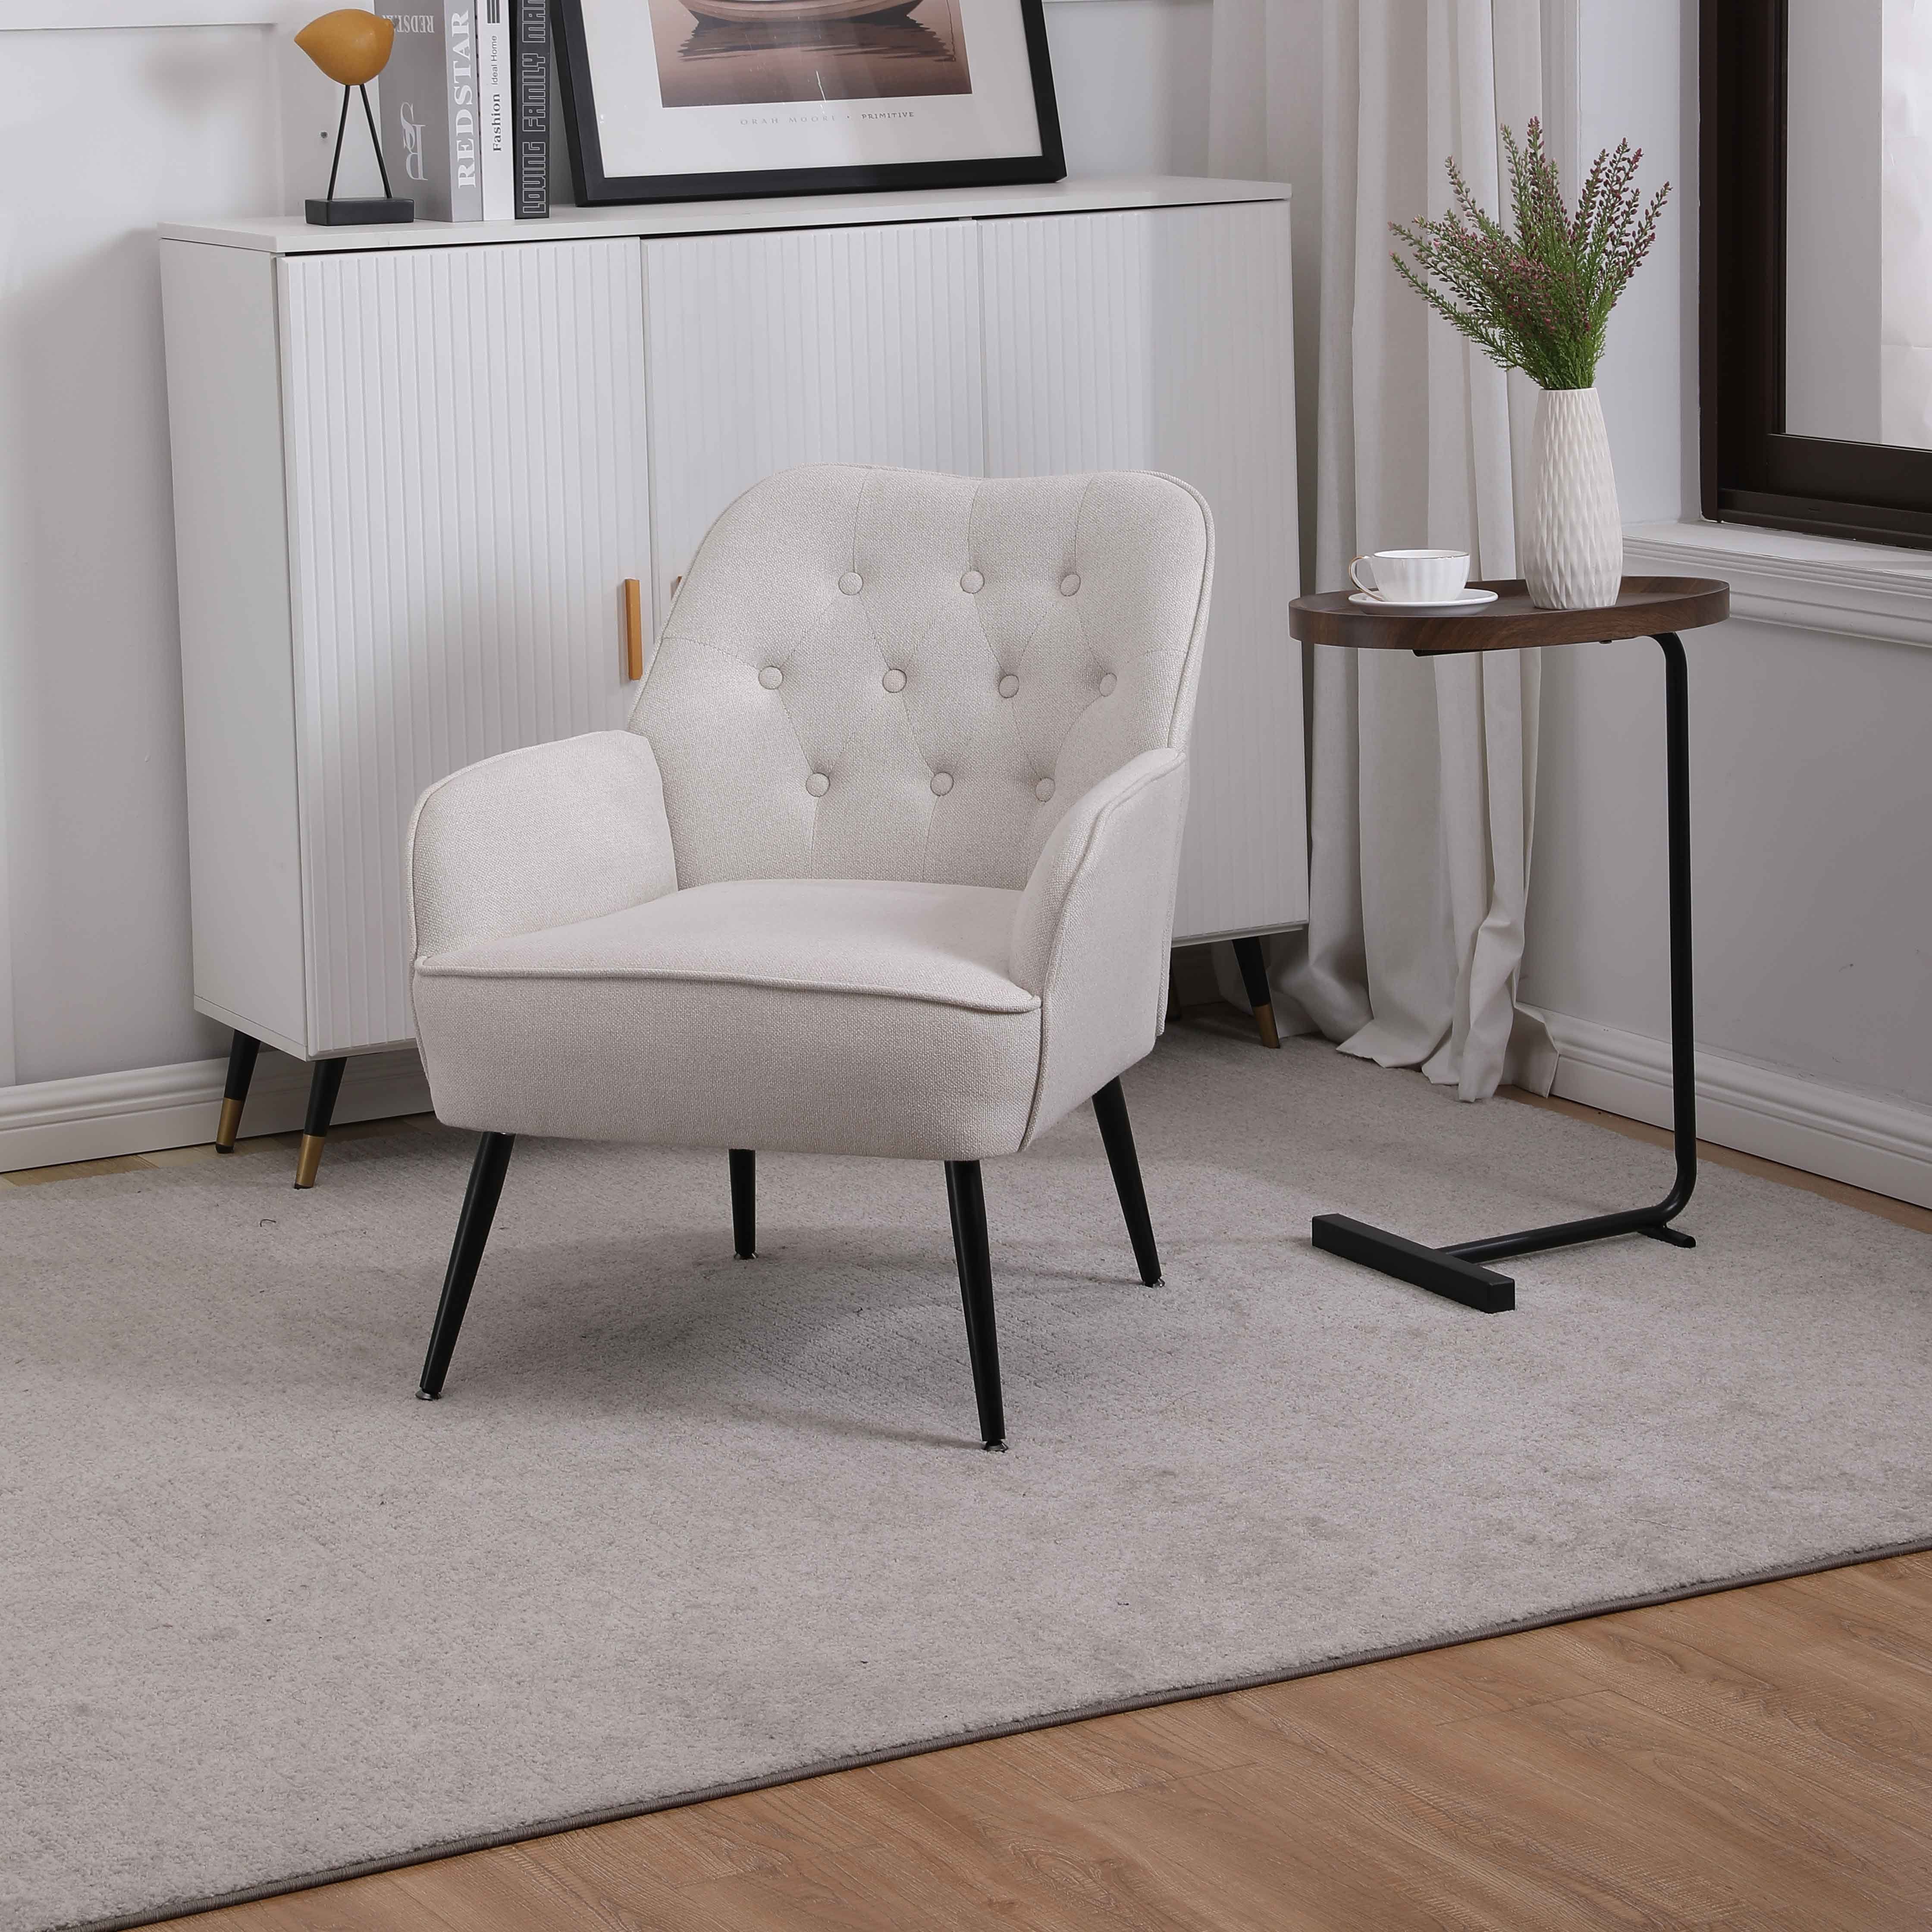 WISHDOR Loungesessel Polstersessel Relaxsessel Einzelsessel, Gepolsterte Einzelsofa Stuhl (Büro Freizeit Gepolsterte Einzelsofa Stuhl), Kaffee Stuhl mit Metallbeinen weiß